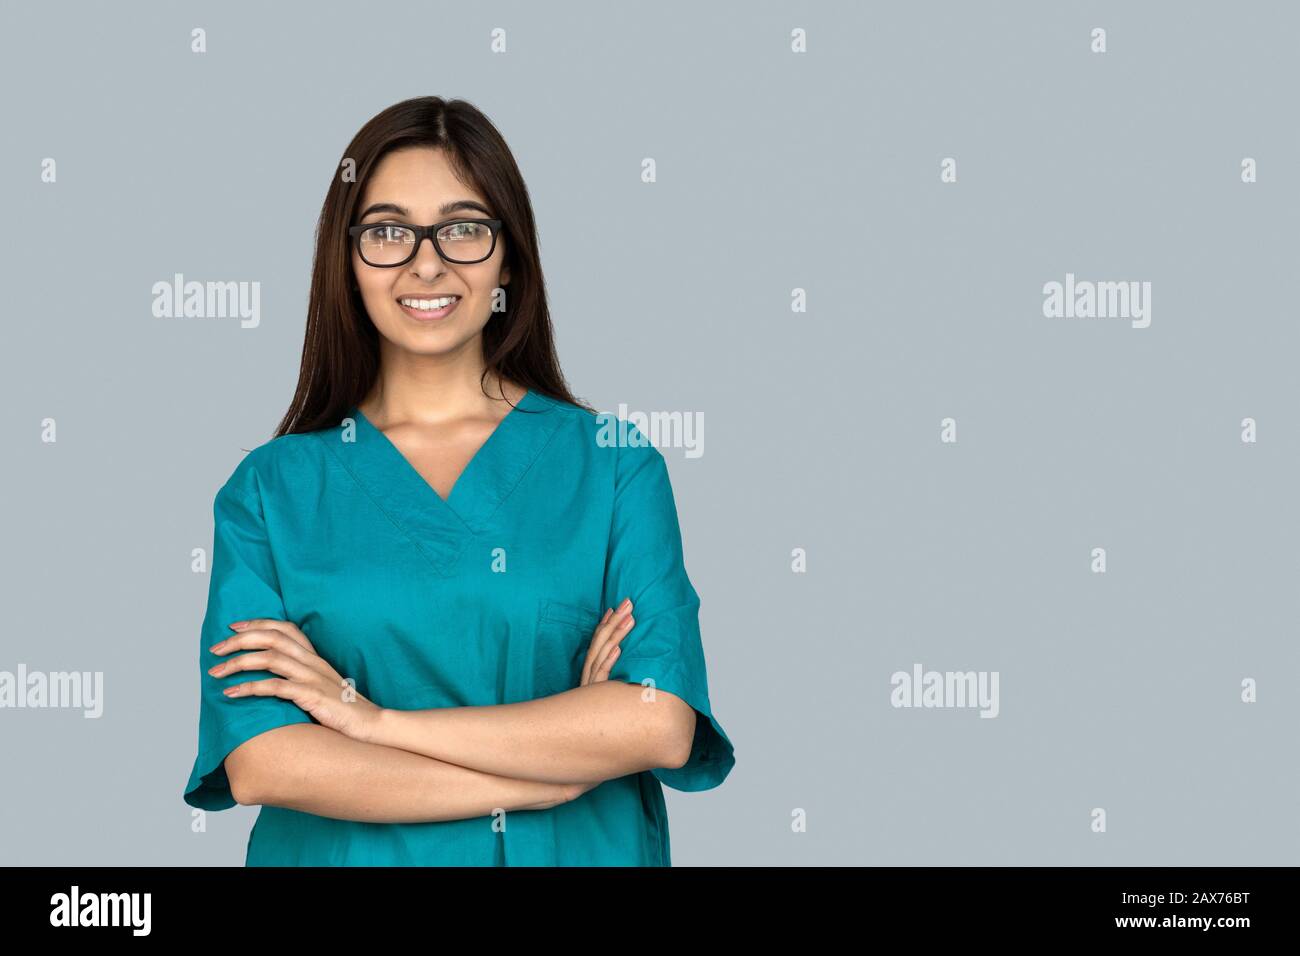 Sorridente giovane indiana donna infermiera braccia incrociate guardare la macchina fotografica isolato sul grigio Foto Stock